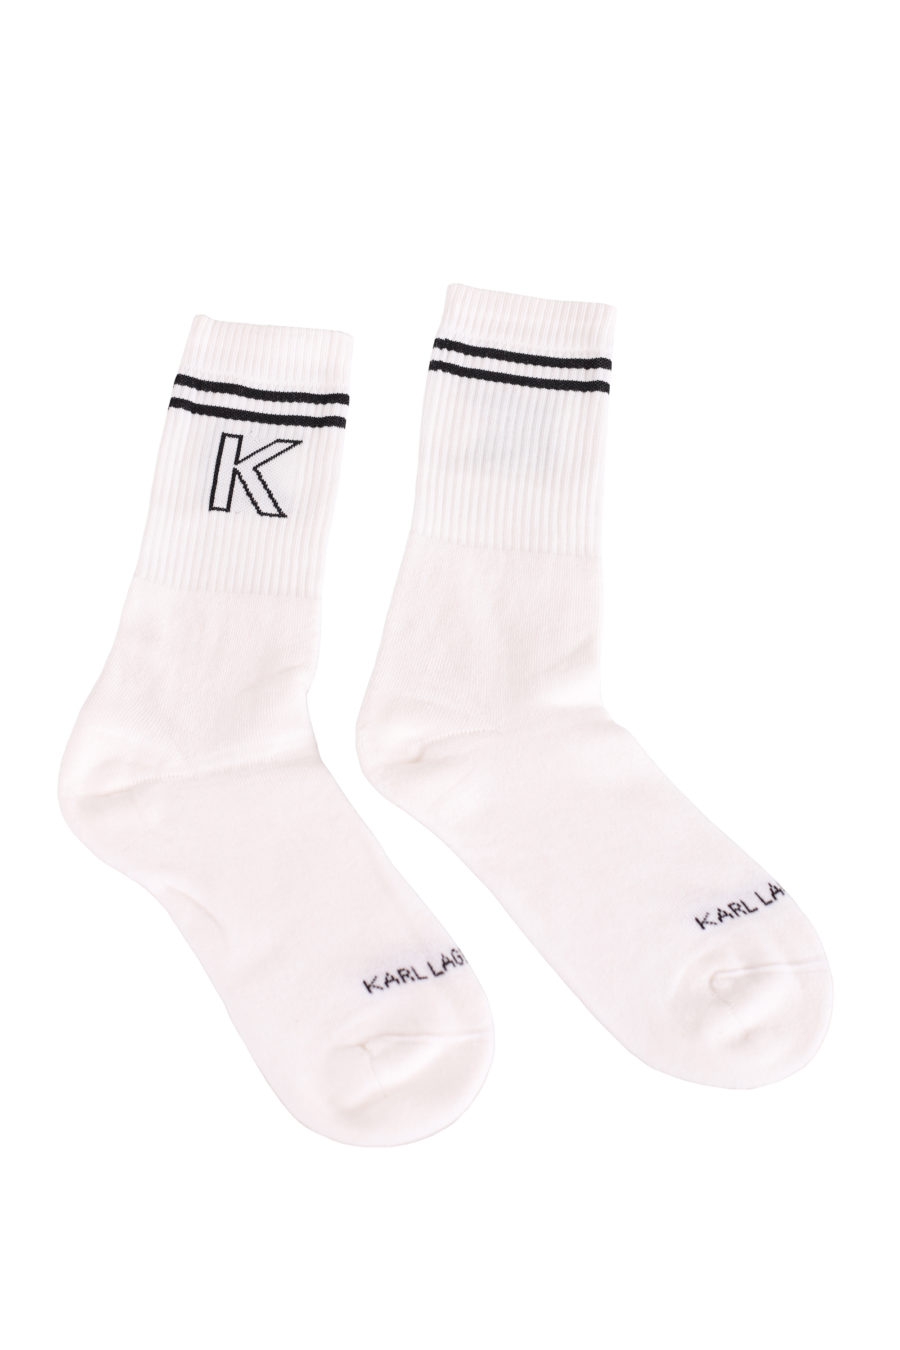 Weiße Socken mit schwarzem Logo - d52df0fb08a6b3234dc1a3154991b18679661dbc